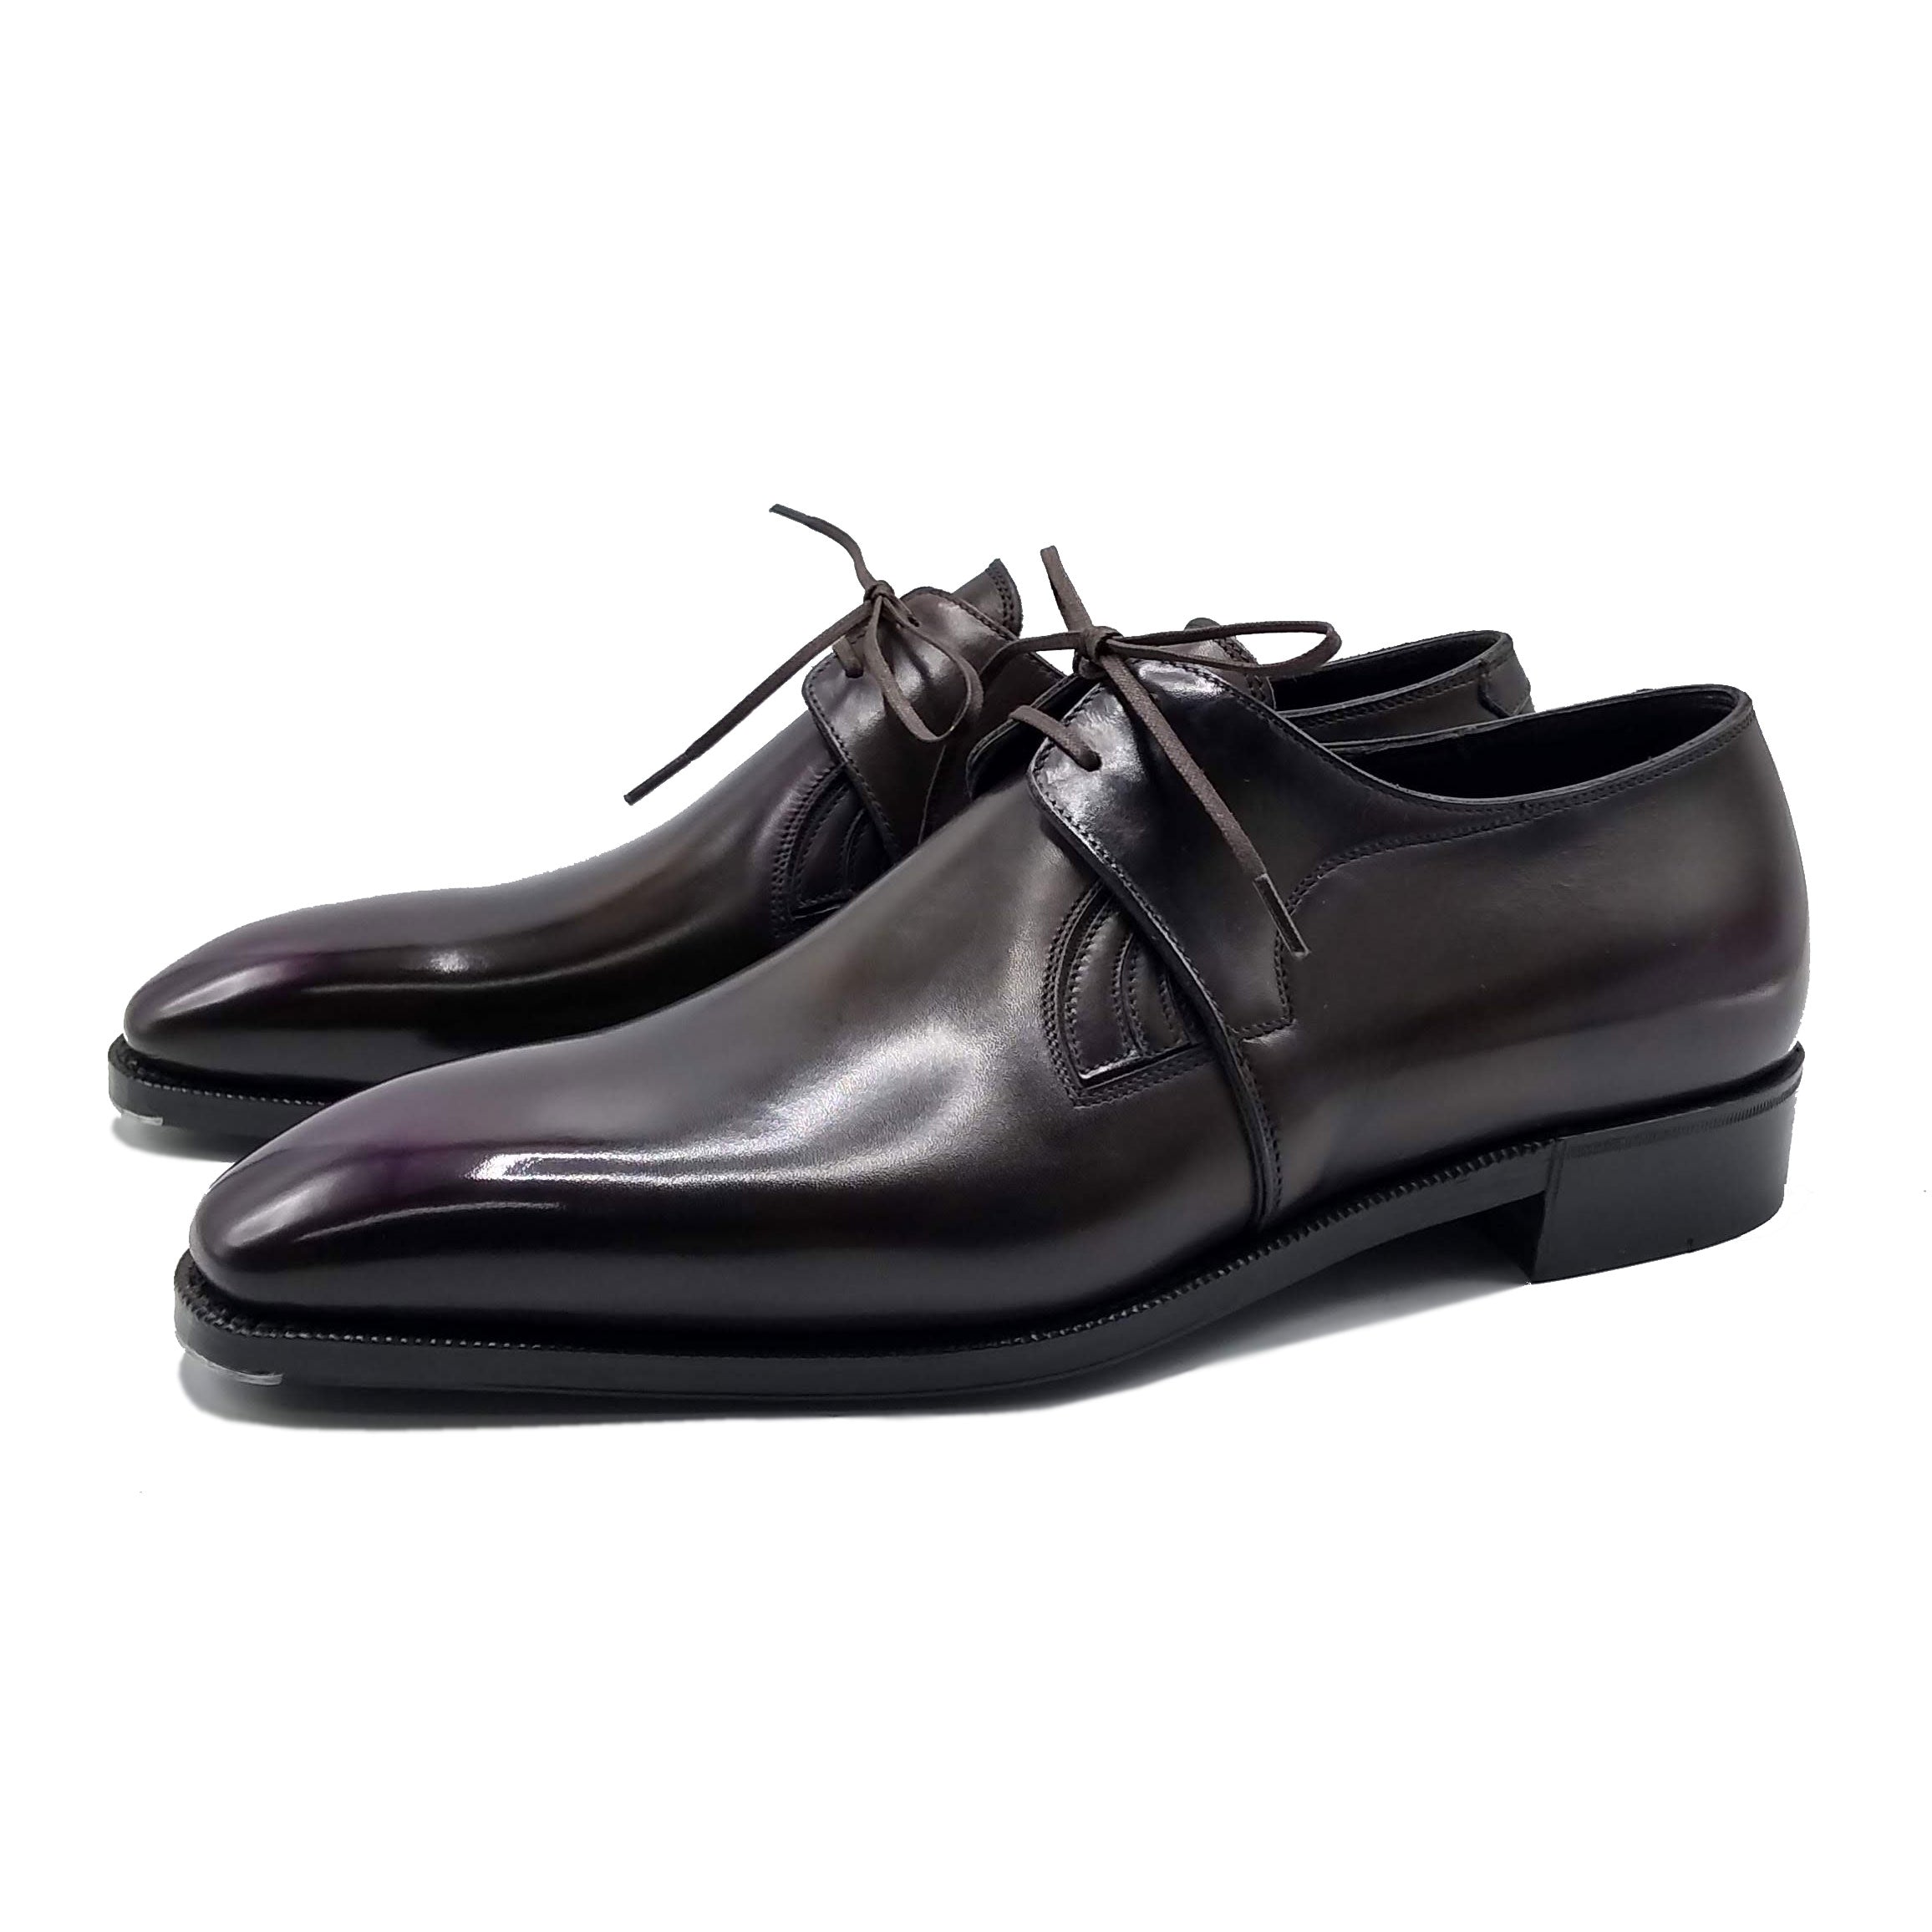 Westley Decon Derby Shoe MTO - Black and Purple Handmade Patina